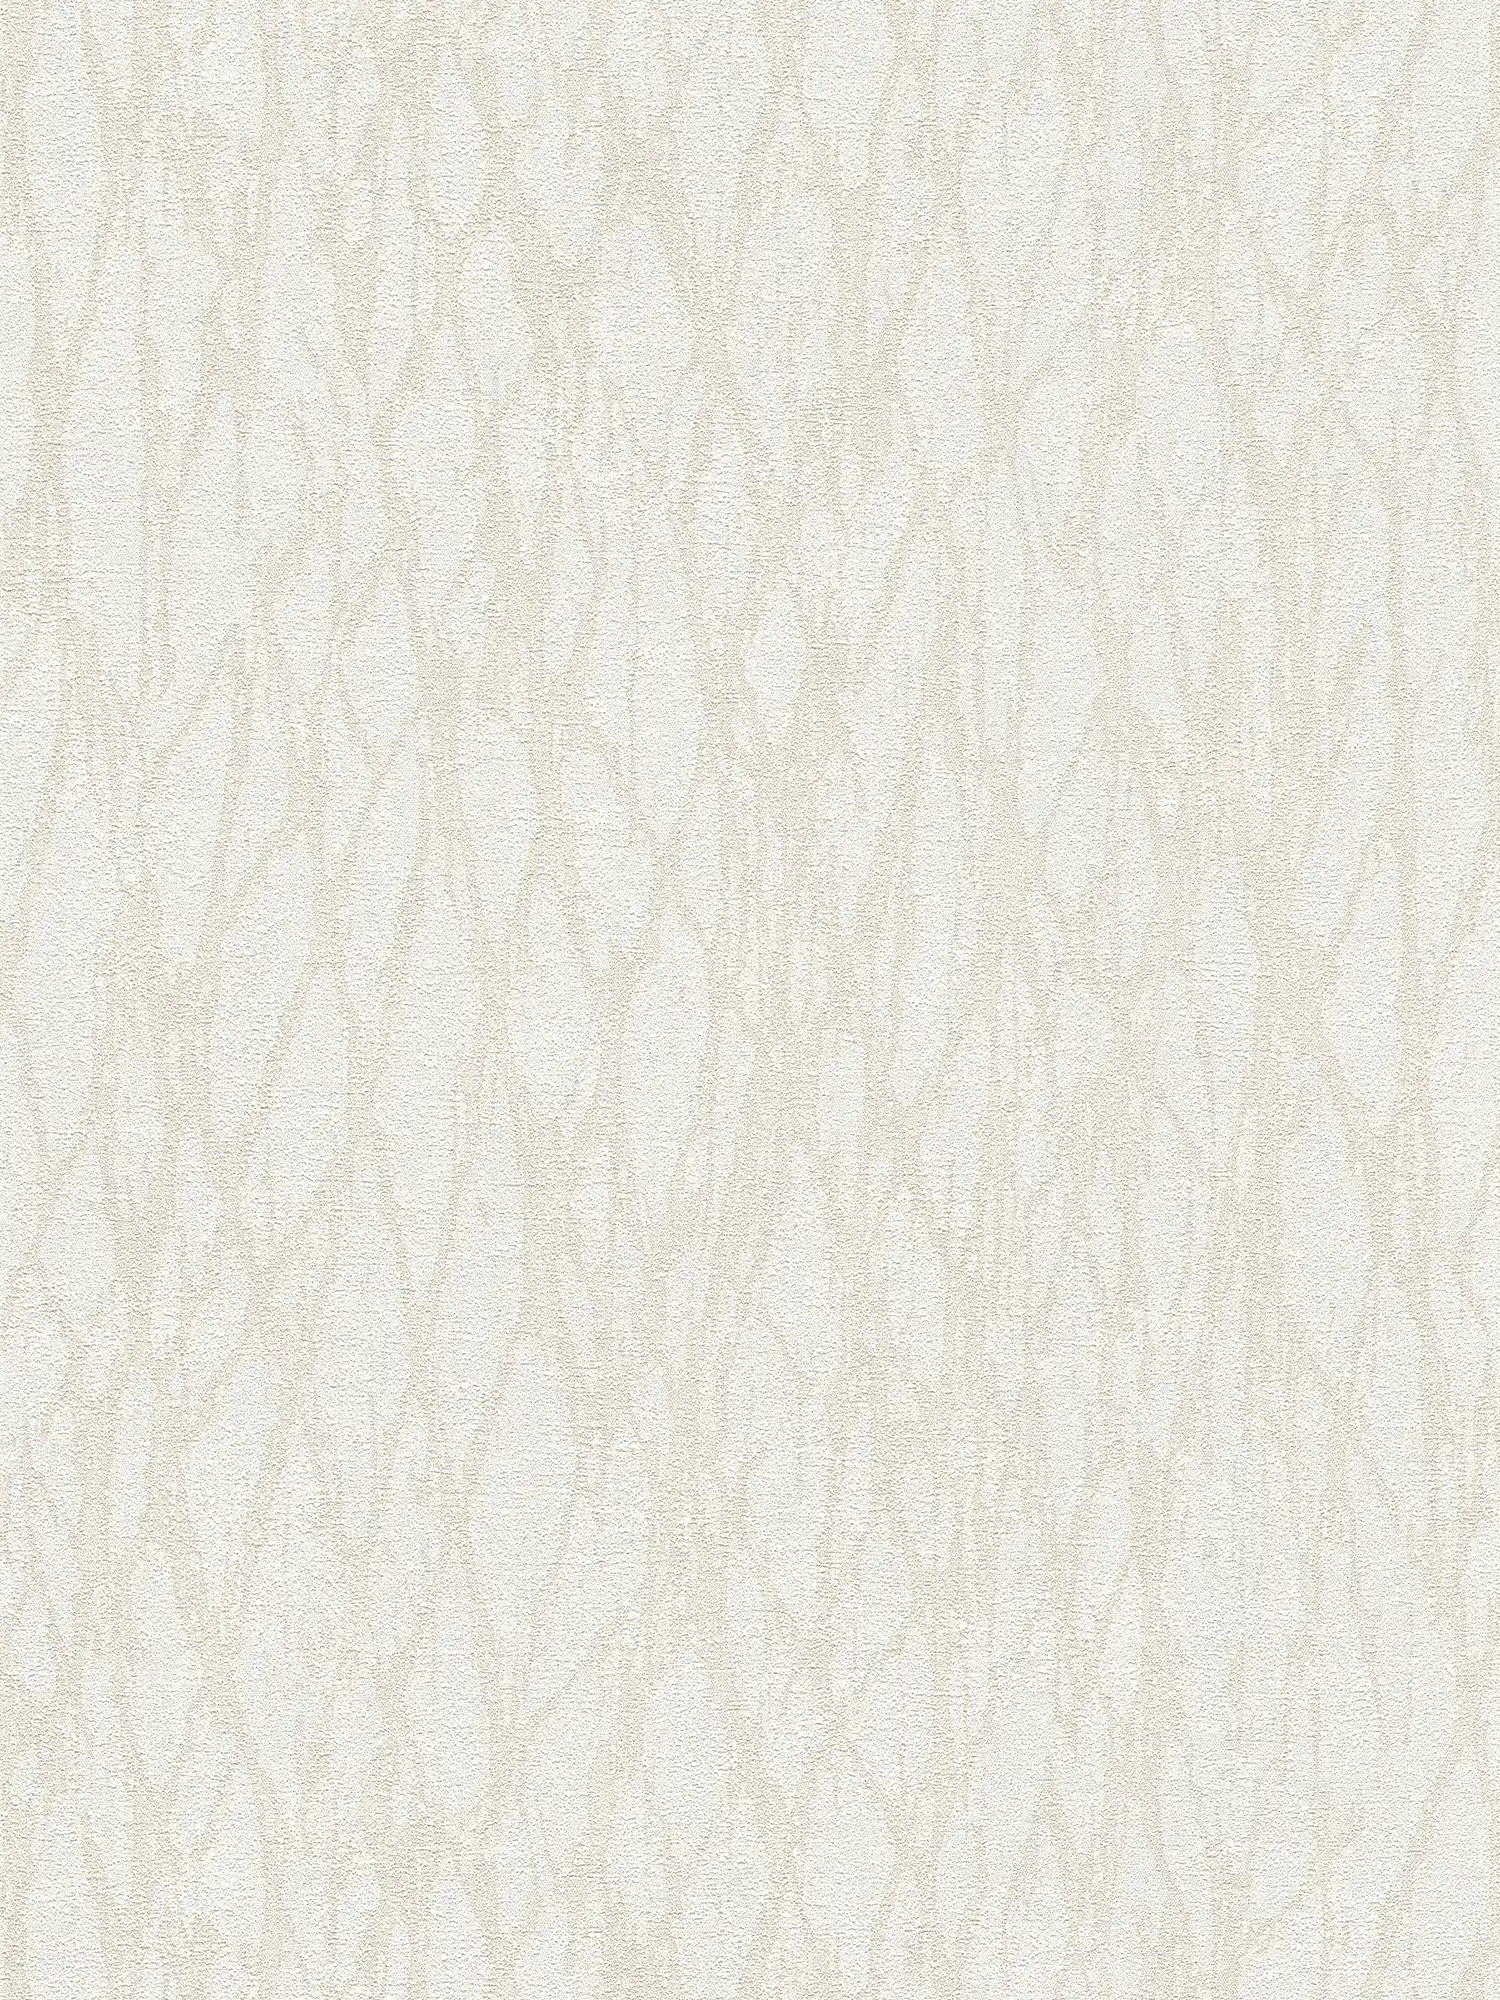 Vliesbehang met abstract lijnenpatroon - wit, beige, crème
